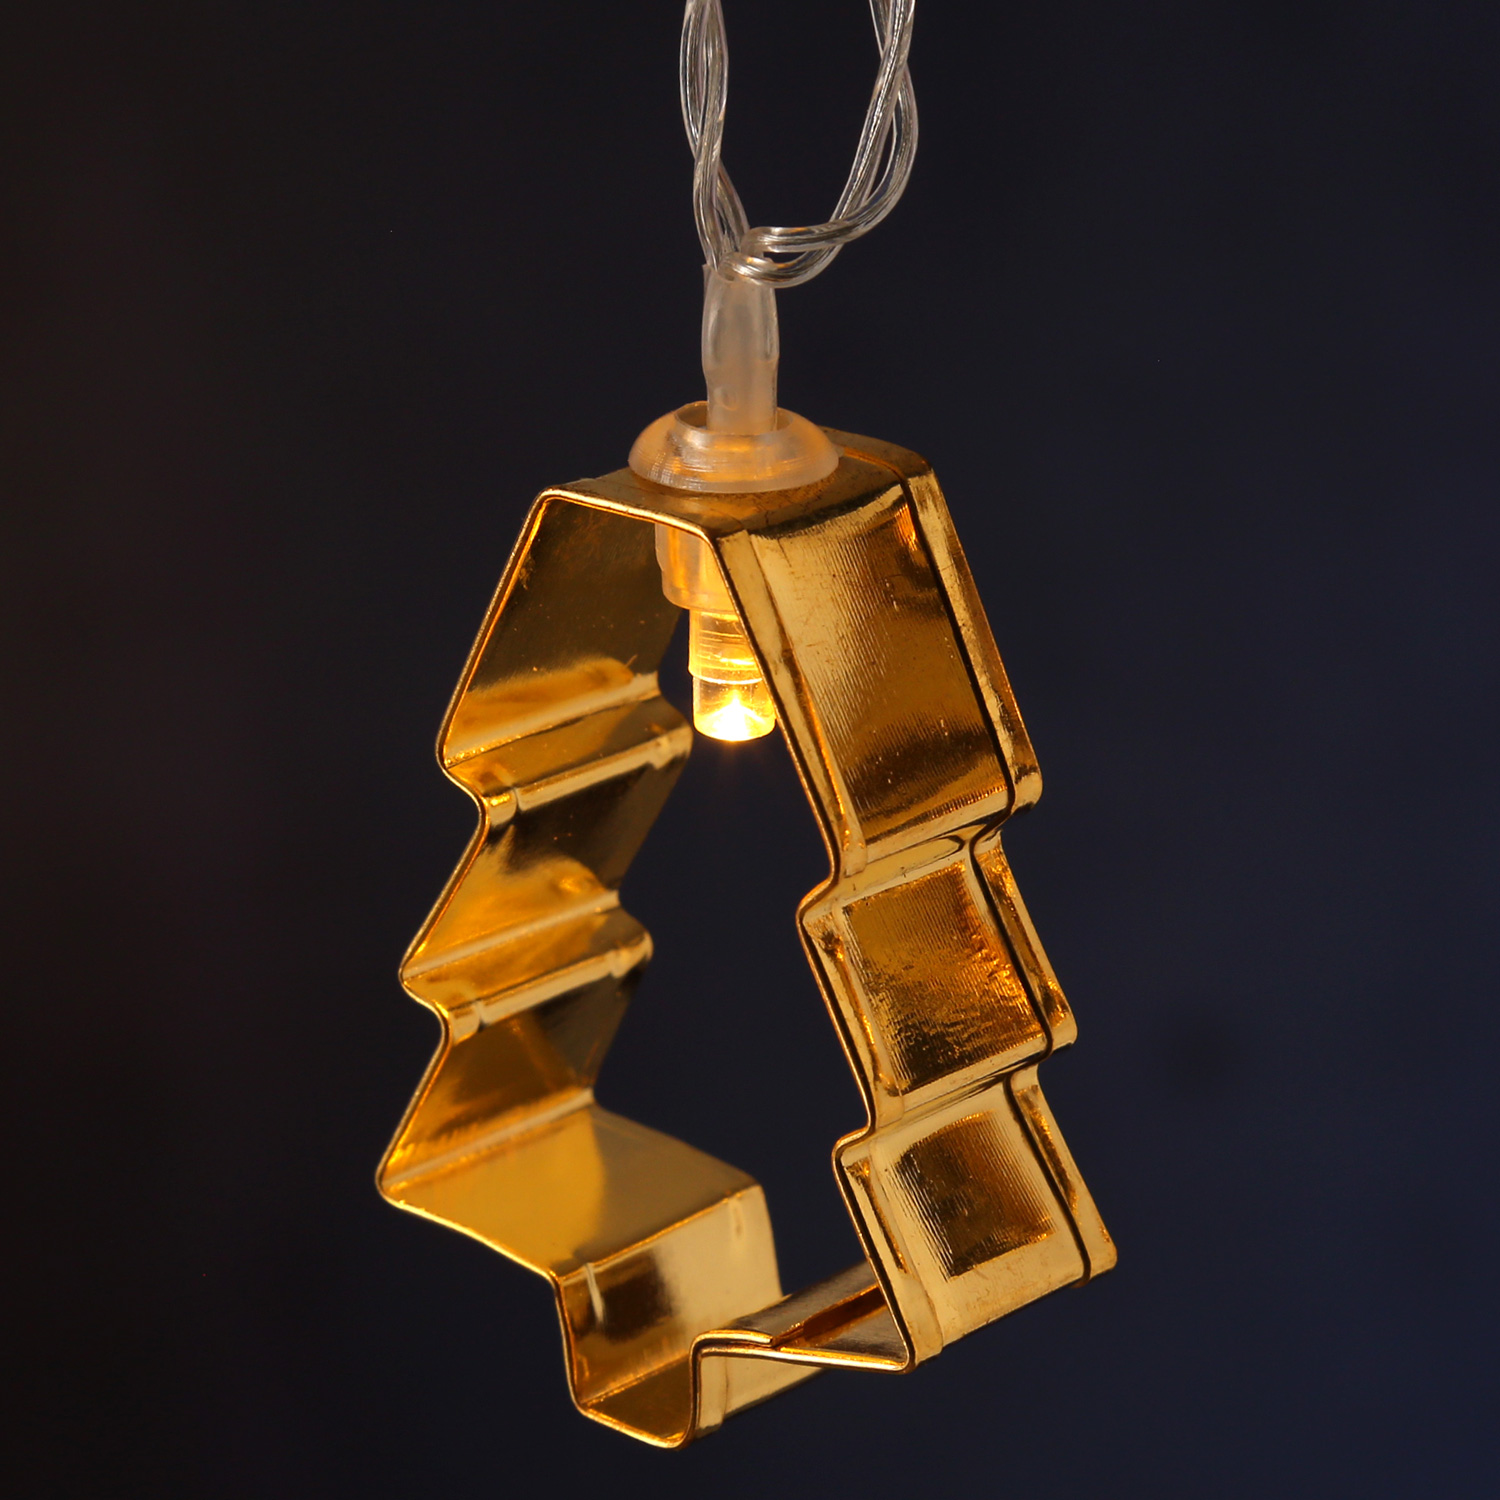 LED Lichterkette mit goldenen Baum Backförmchen - 8 warmweiße LED - Batteriebetrieb - L: 1,4m